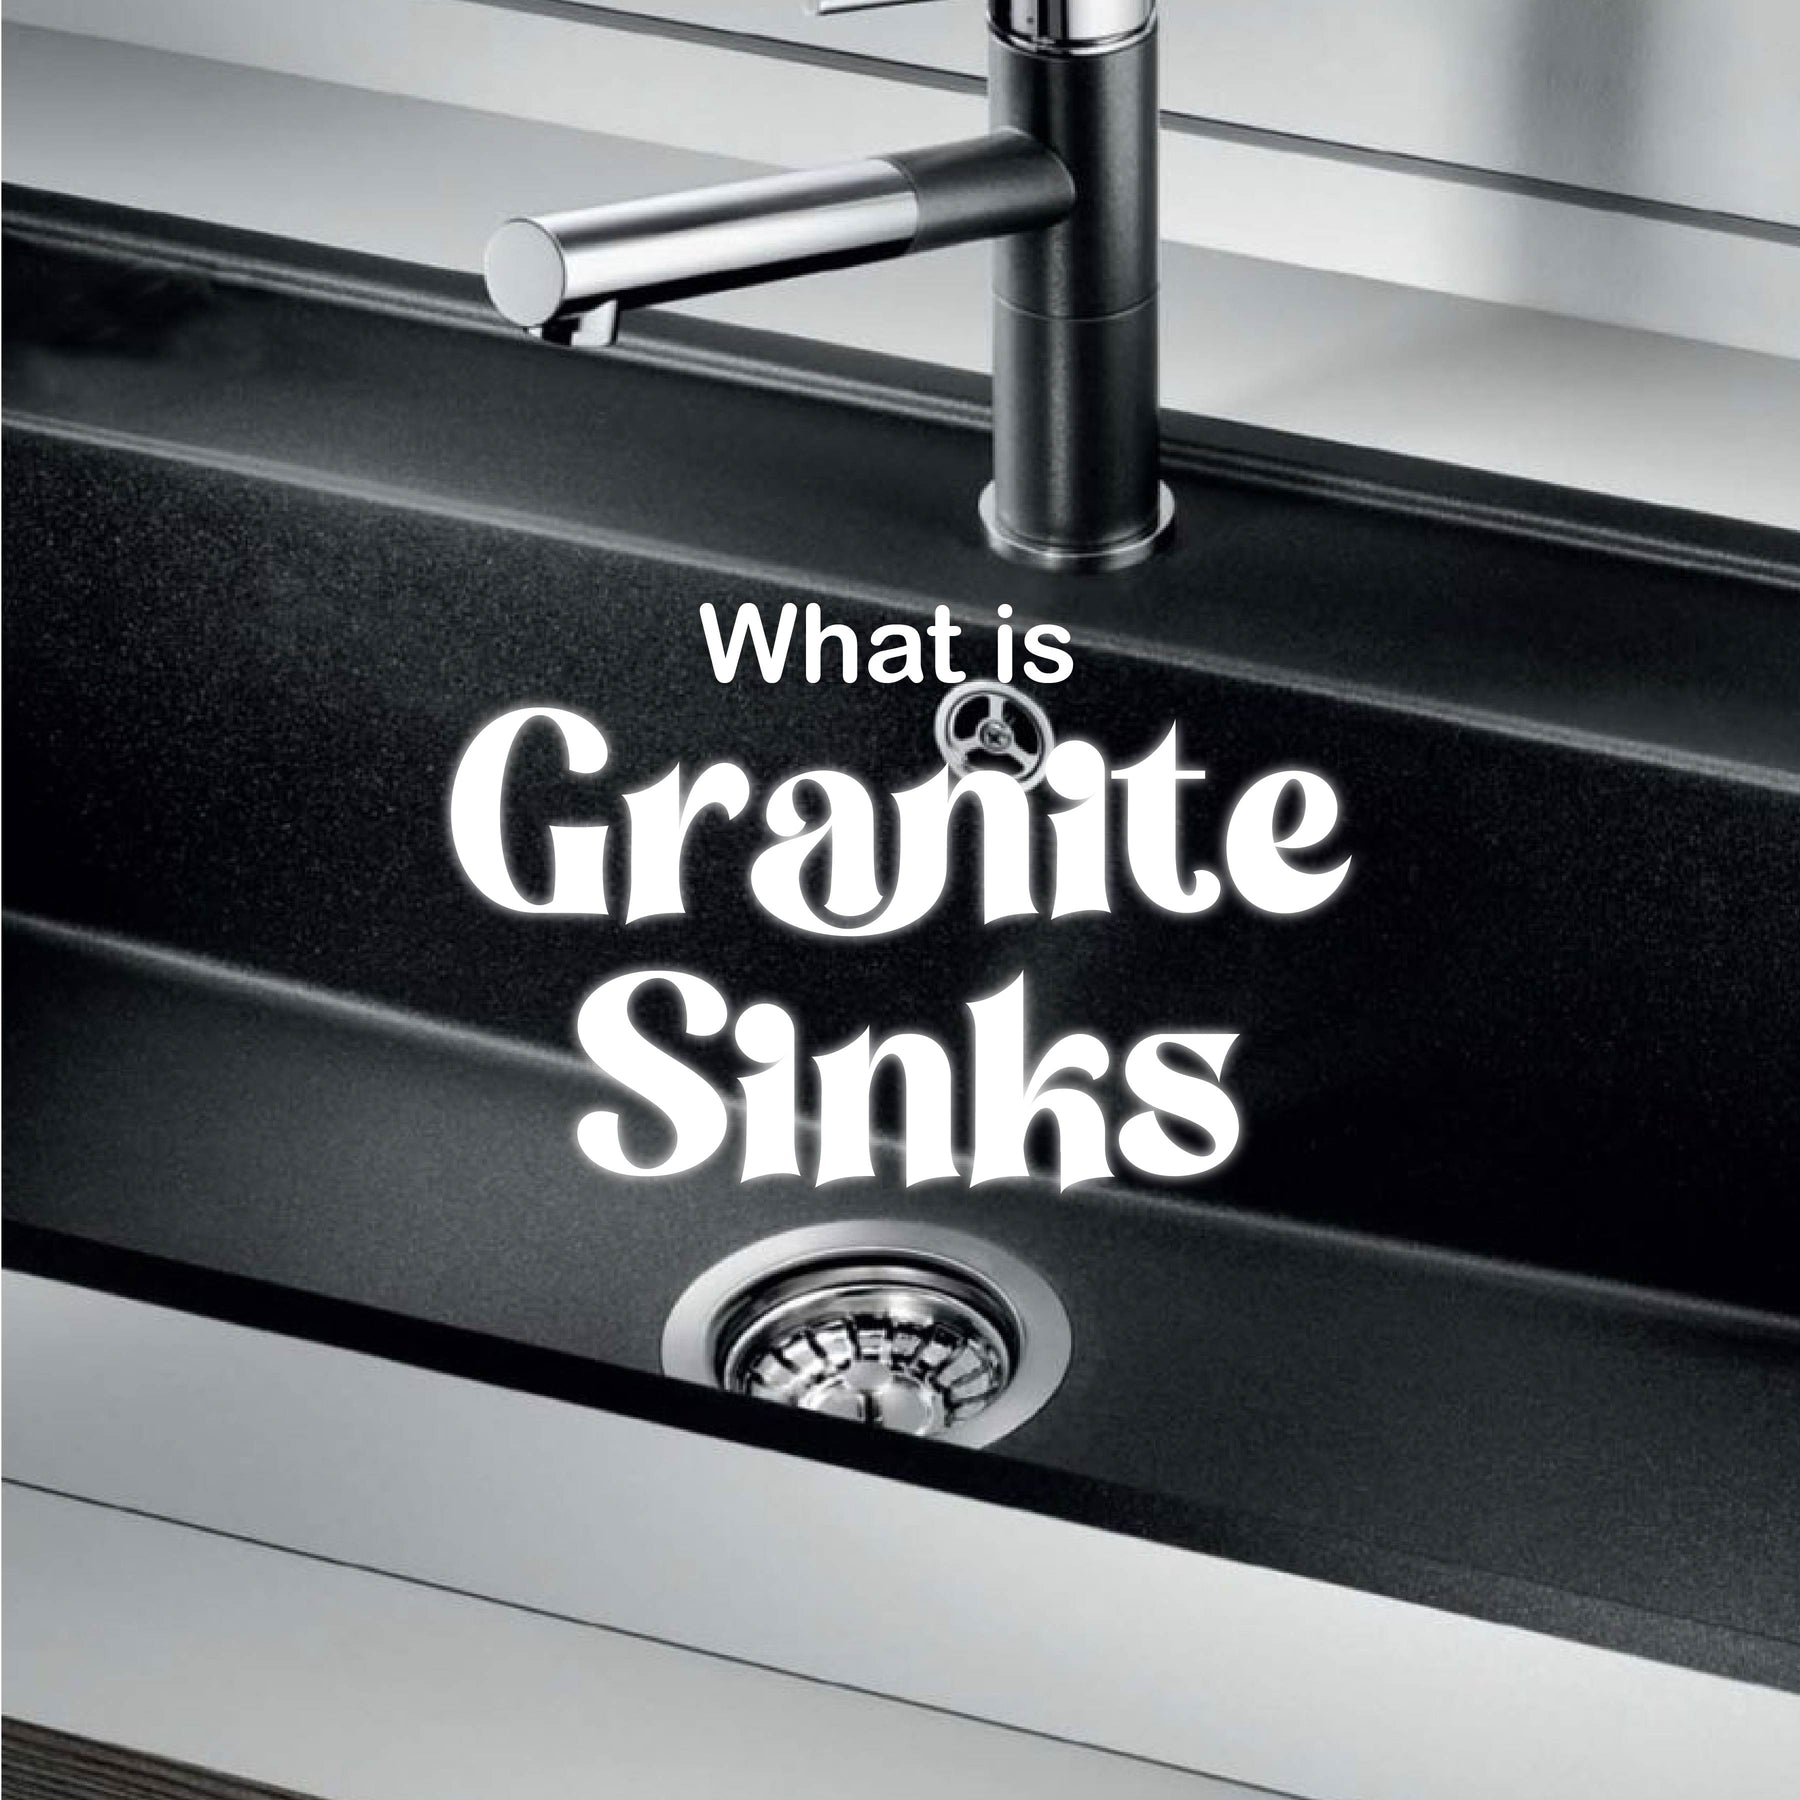 What is Granite Sinks?